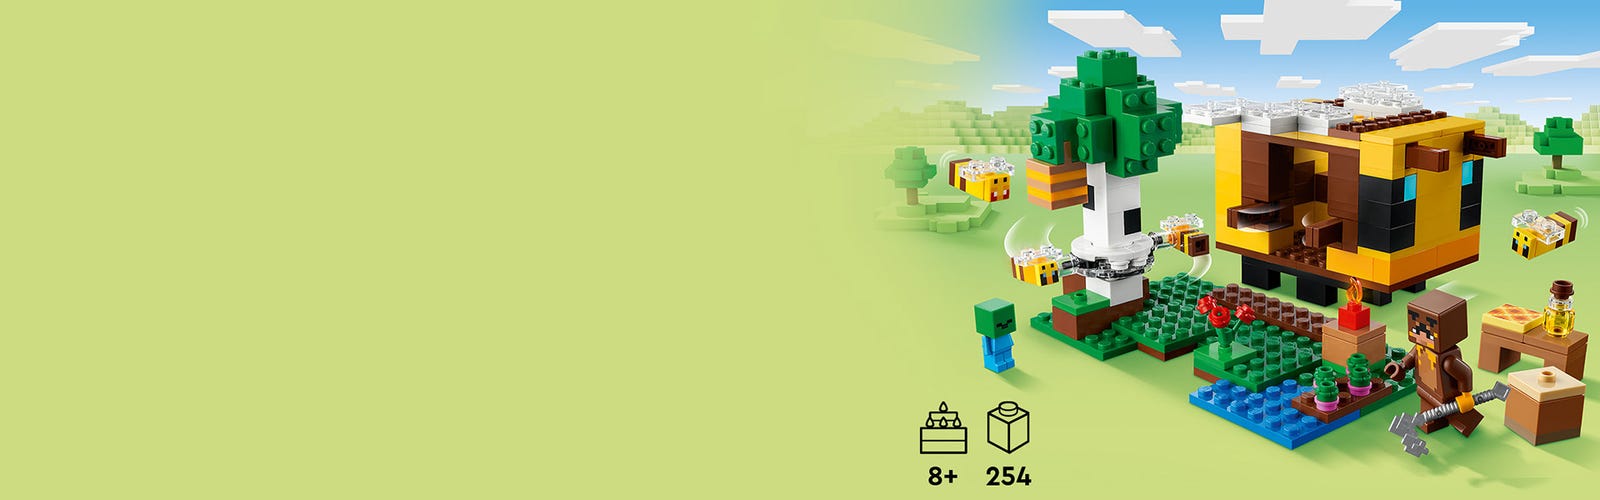 LEGO Minecraft 21241 La cabane Abeille, Jouet, Ferme avec Maison, Zombie et  Figurines Animaux pas cher 